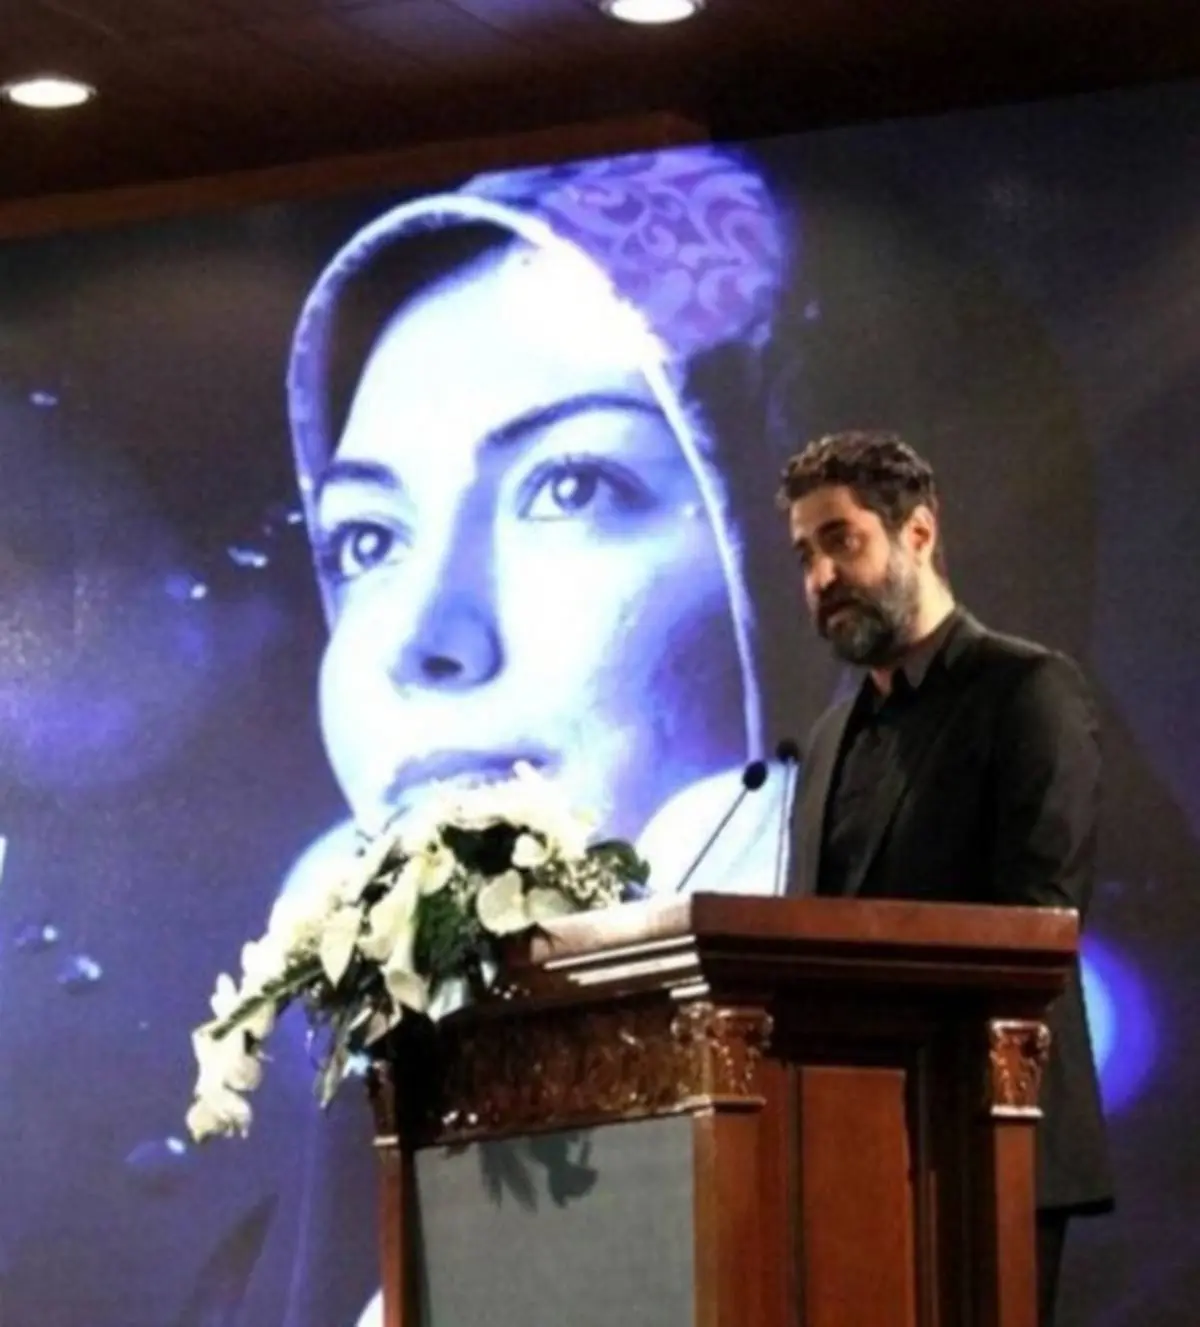 عکس لورفته از همسر مهناز افشار در مراسم چهلم آزاده نامداری + عکس